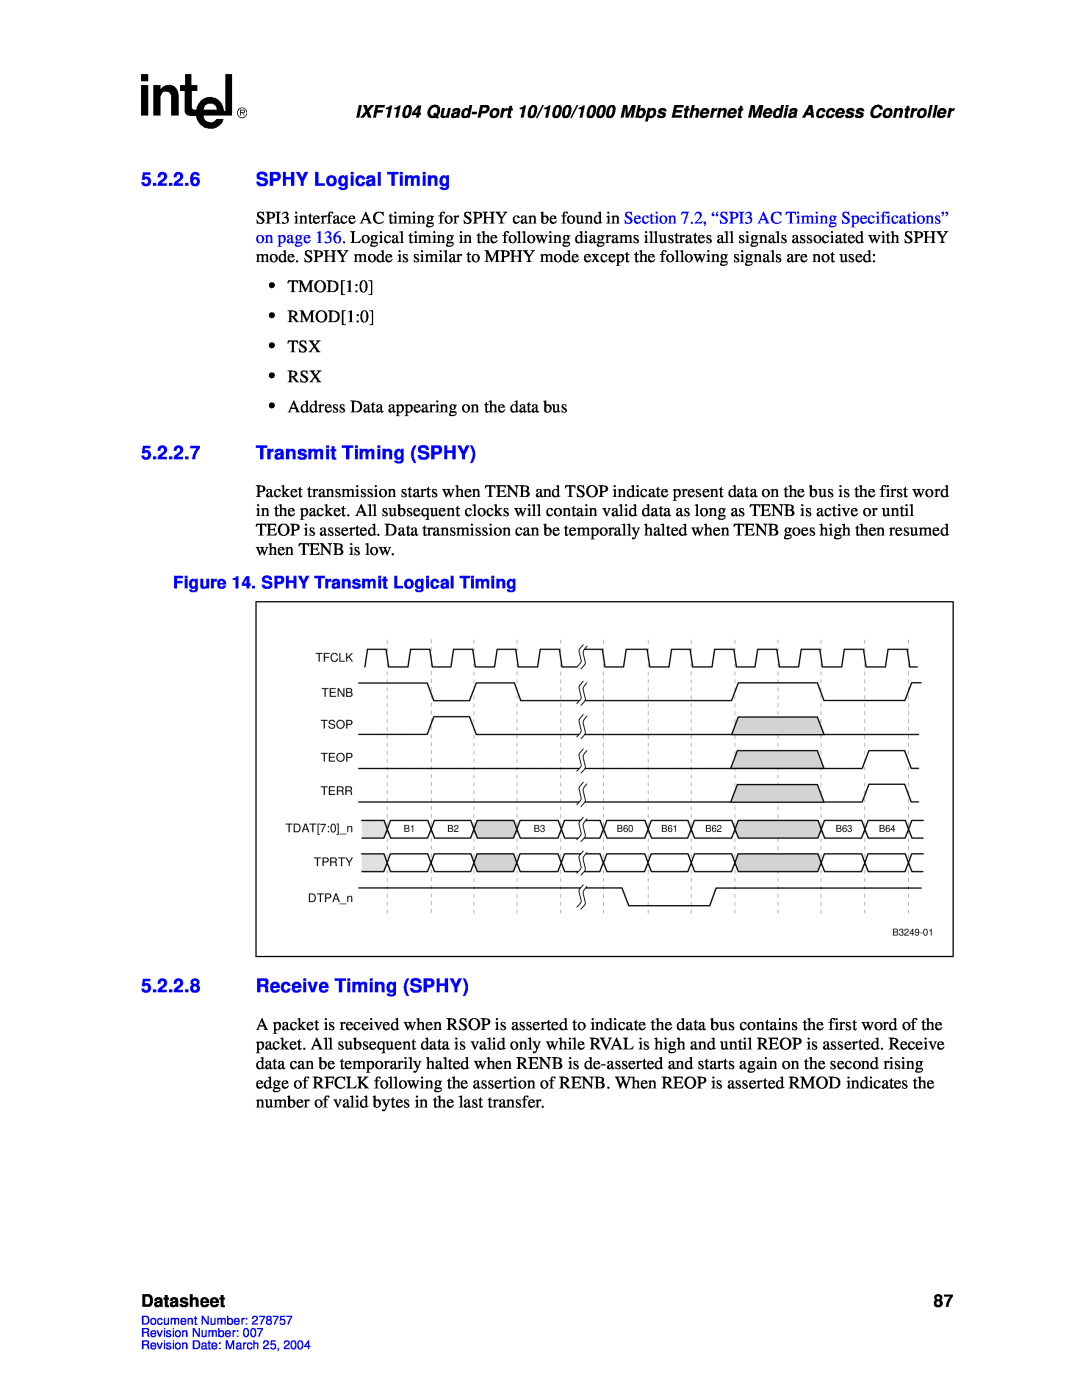 Intel IXF1104 manual 5.2.2.6SPHY Logical Timing, 5.2.2.7Transmit Timing SPHY, 5.2.2.8Receive Timing SPHY, Datasheet 